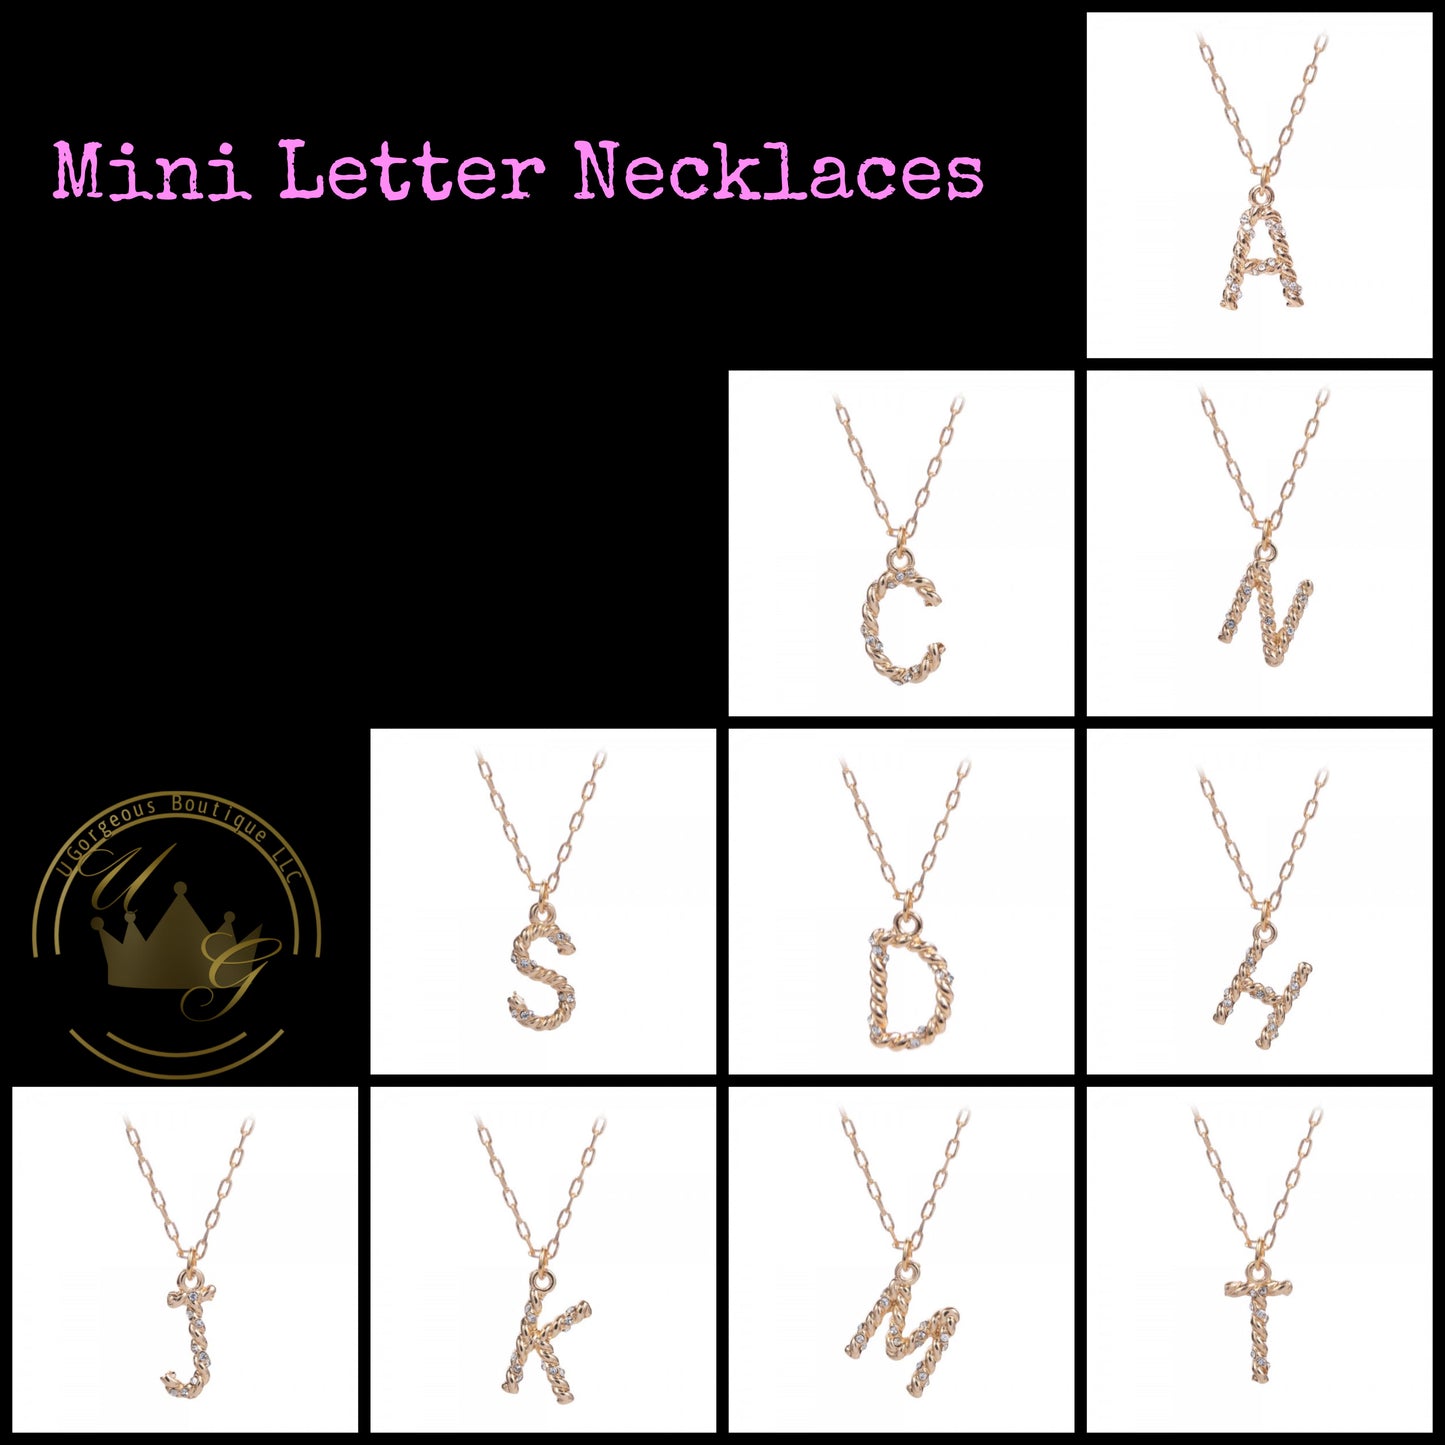 Mini Letter Necklaces